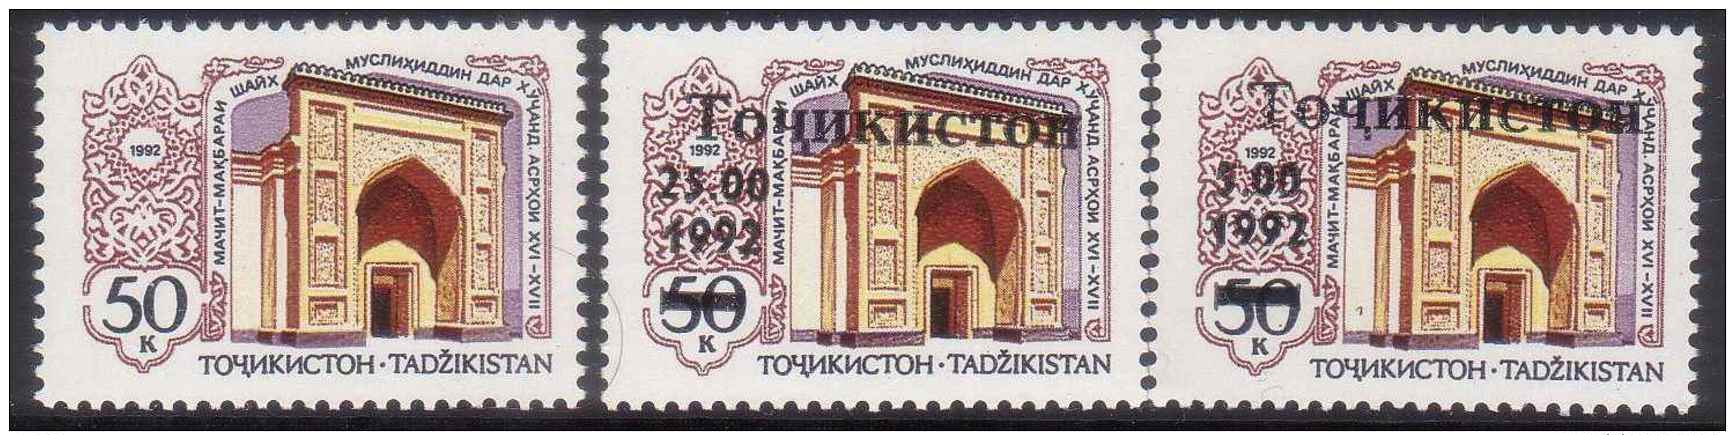 TAJIKISTAN 1992 MOSQUES MNH M02993 - Tajikistan